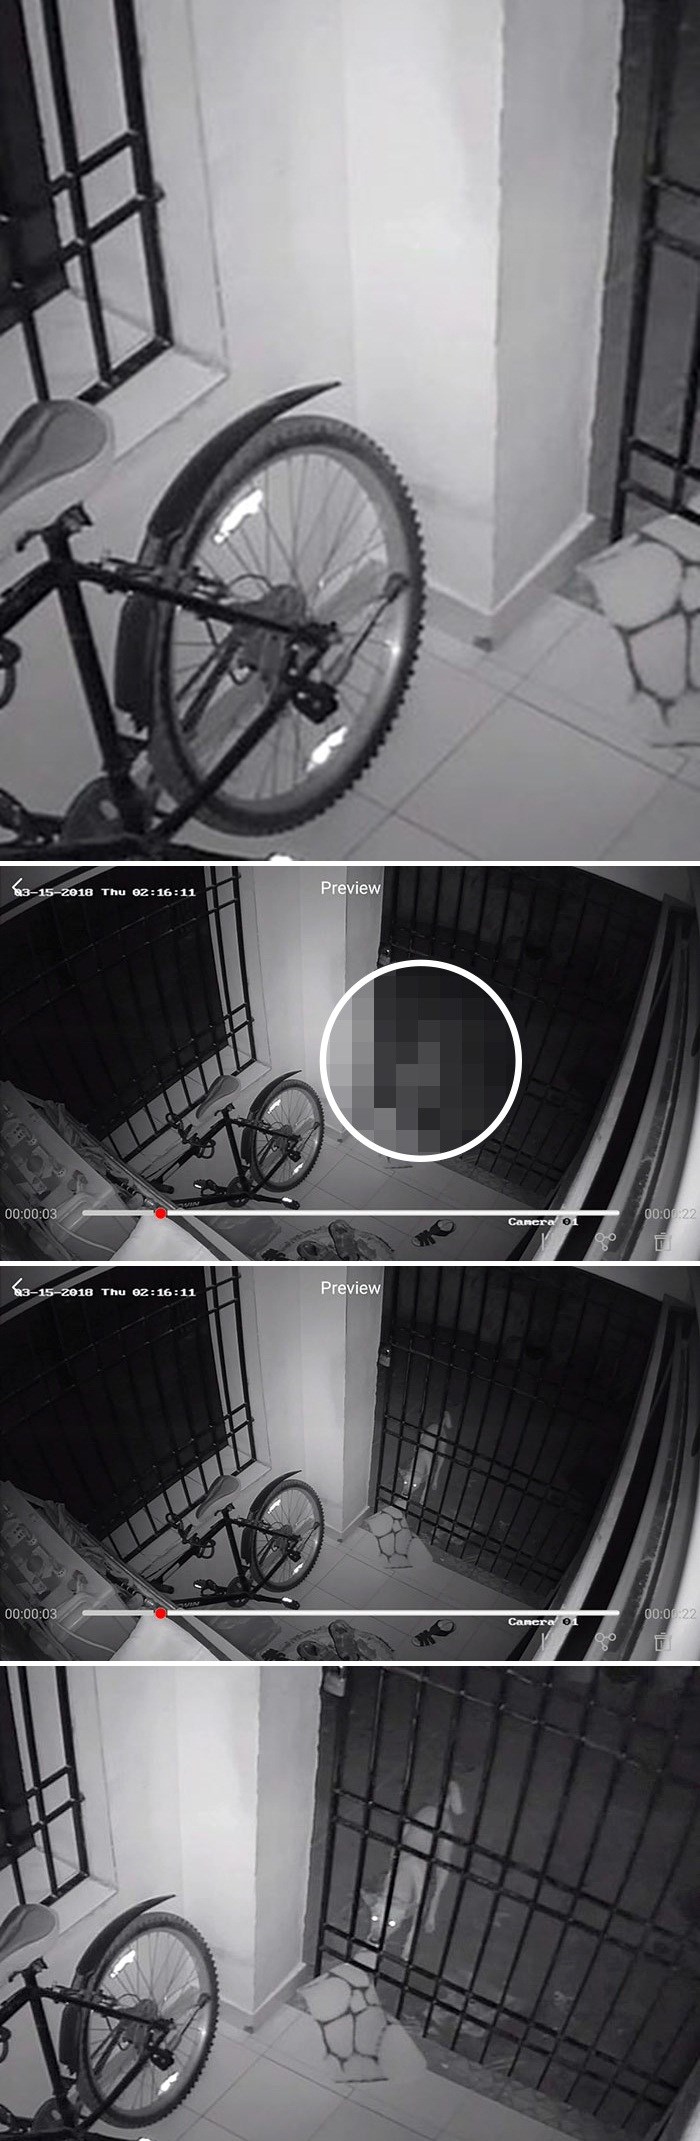 Liku je svake noći nestajao otirač pa je ugradio nadzornu kameru i otkrio neočekivanog kradljivca